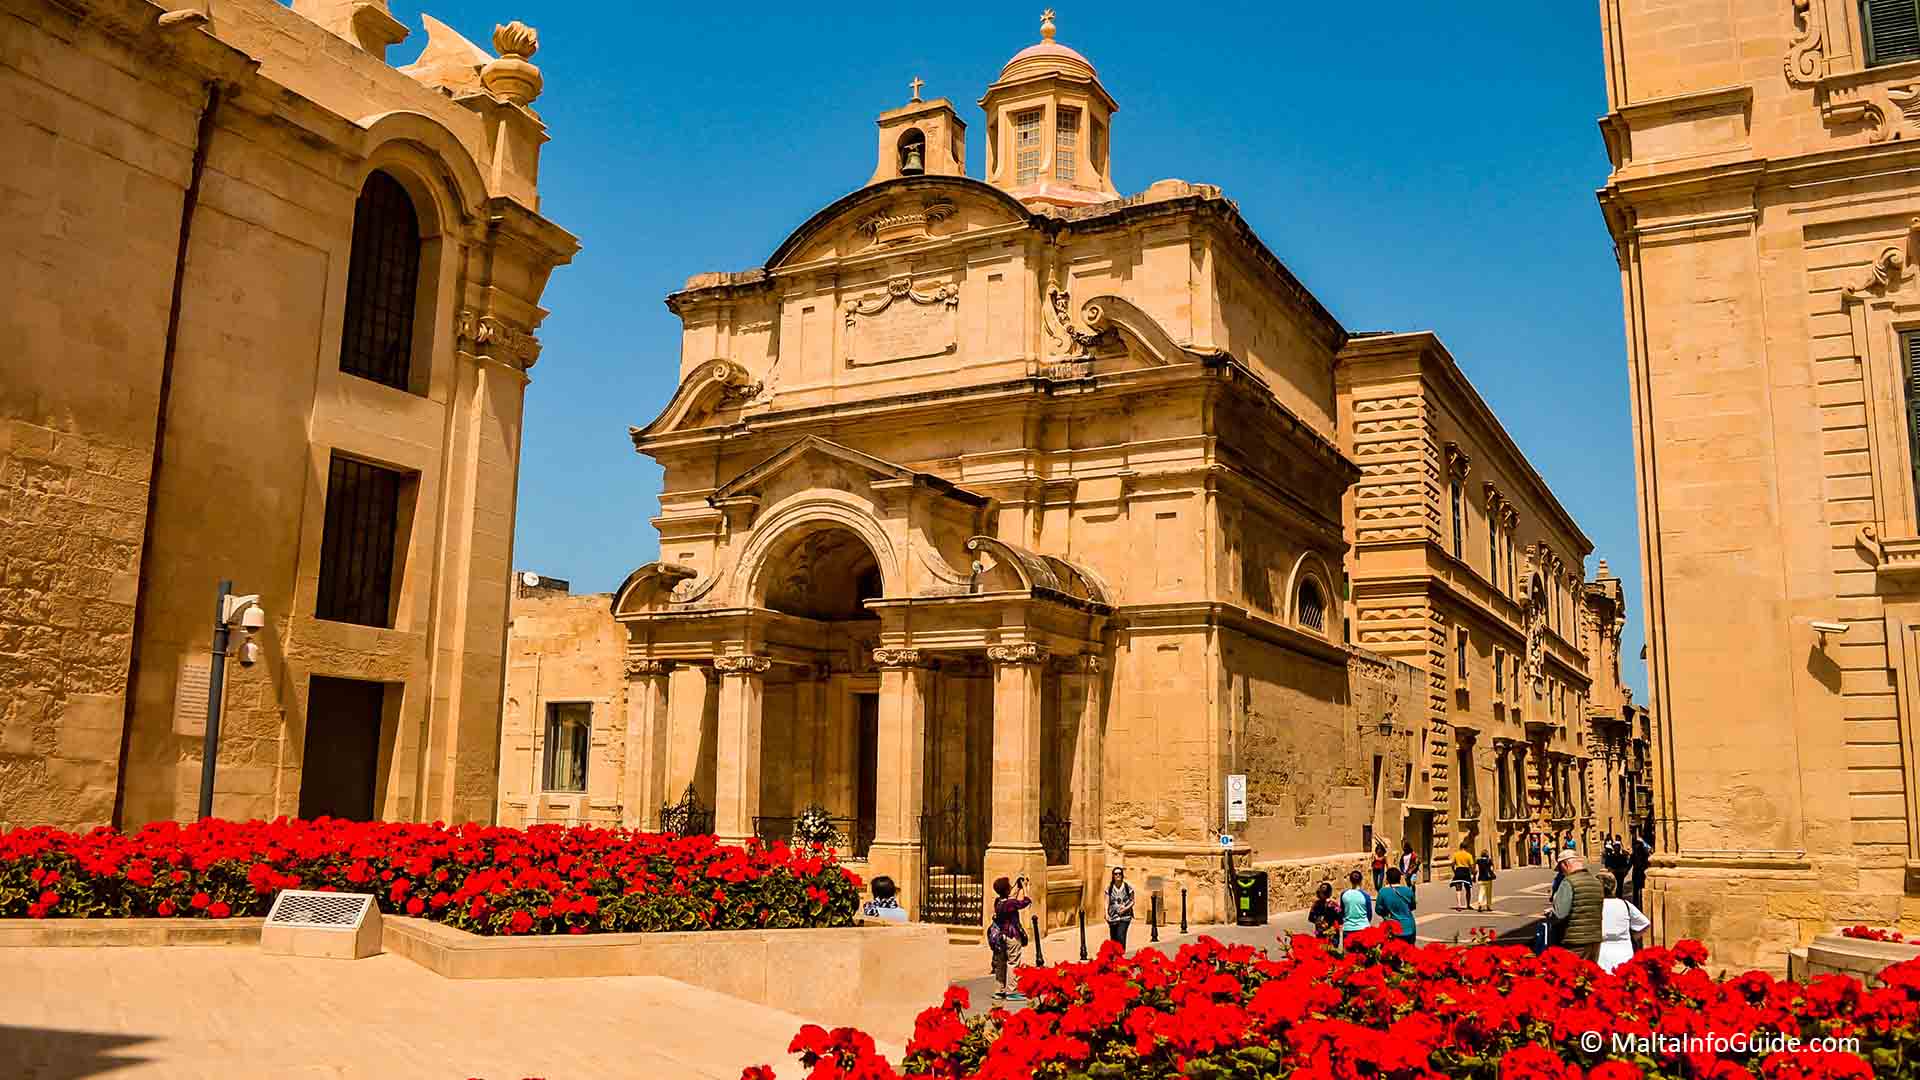 St. Cathrine's church in Valletta